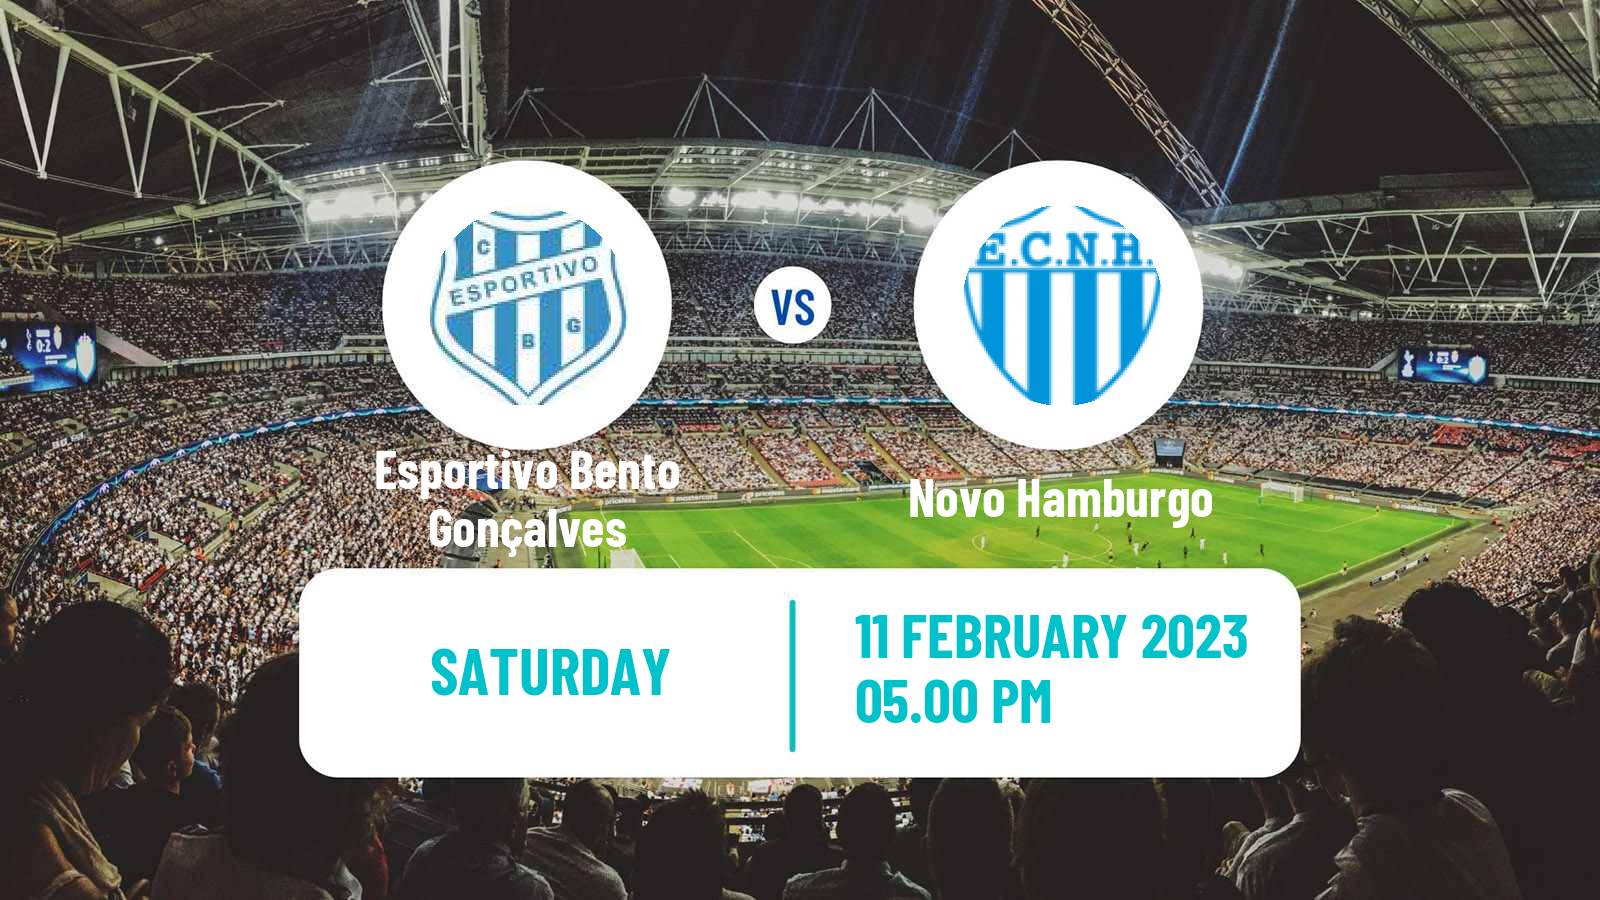 Soccer Brazilian Campeonato Gaucho Esportivo Bento Gonçalves - Novo Hamburgo